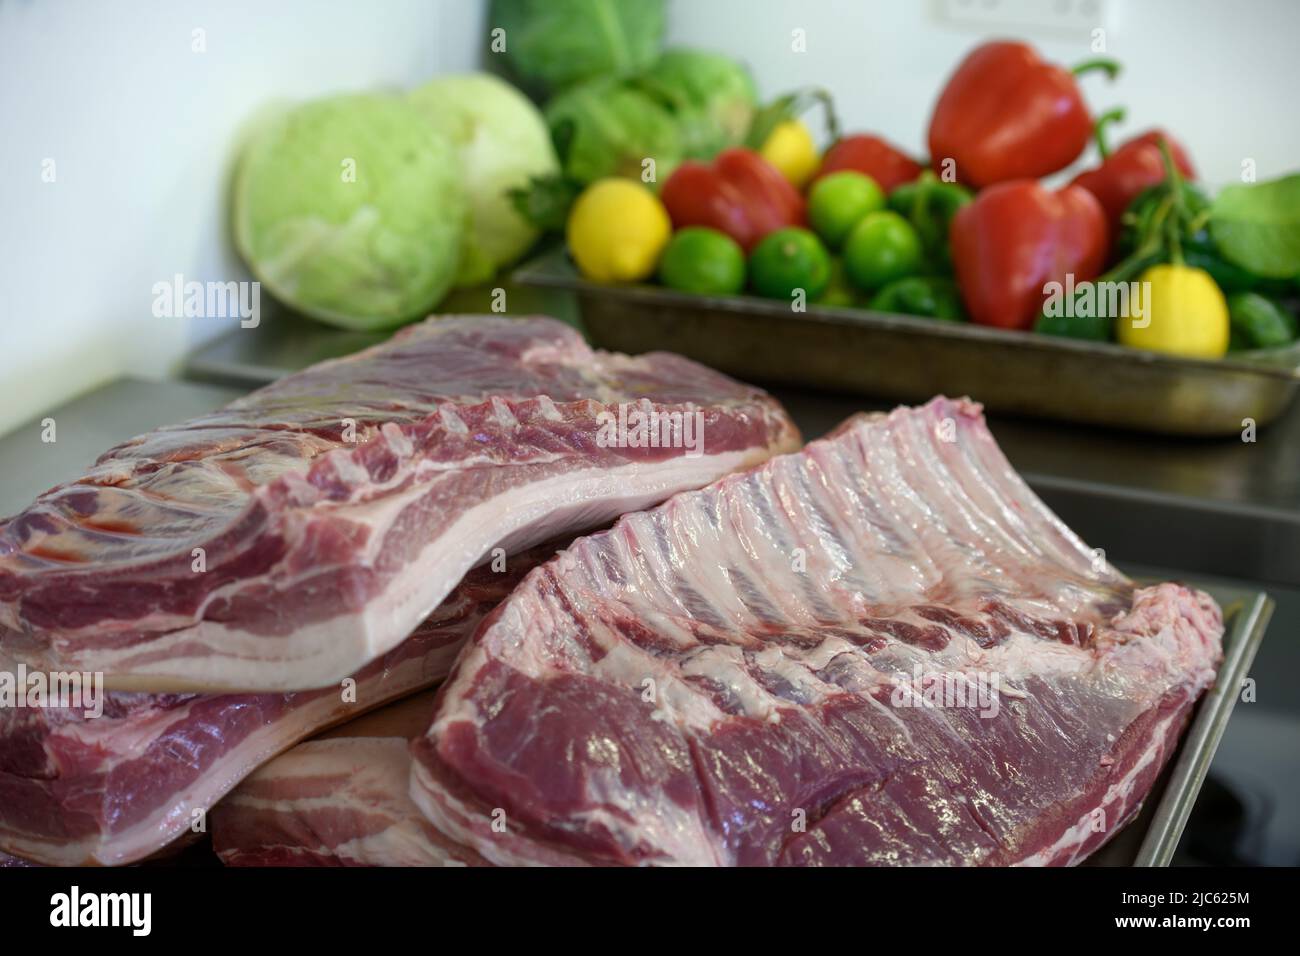 Costillas de cerdo y una bandeja de verduras y fuit de colores vivos. Foto de stock